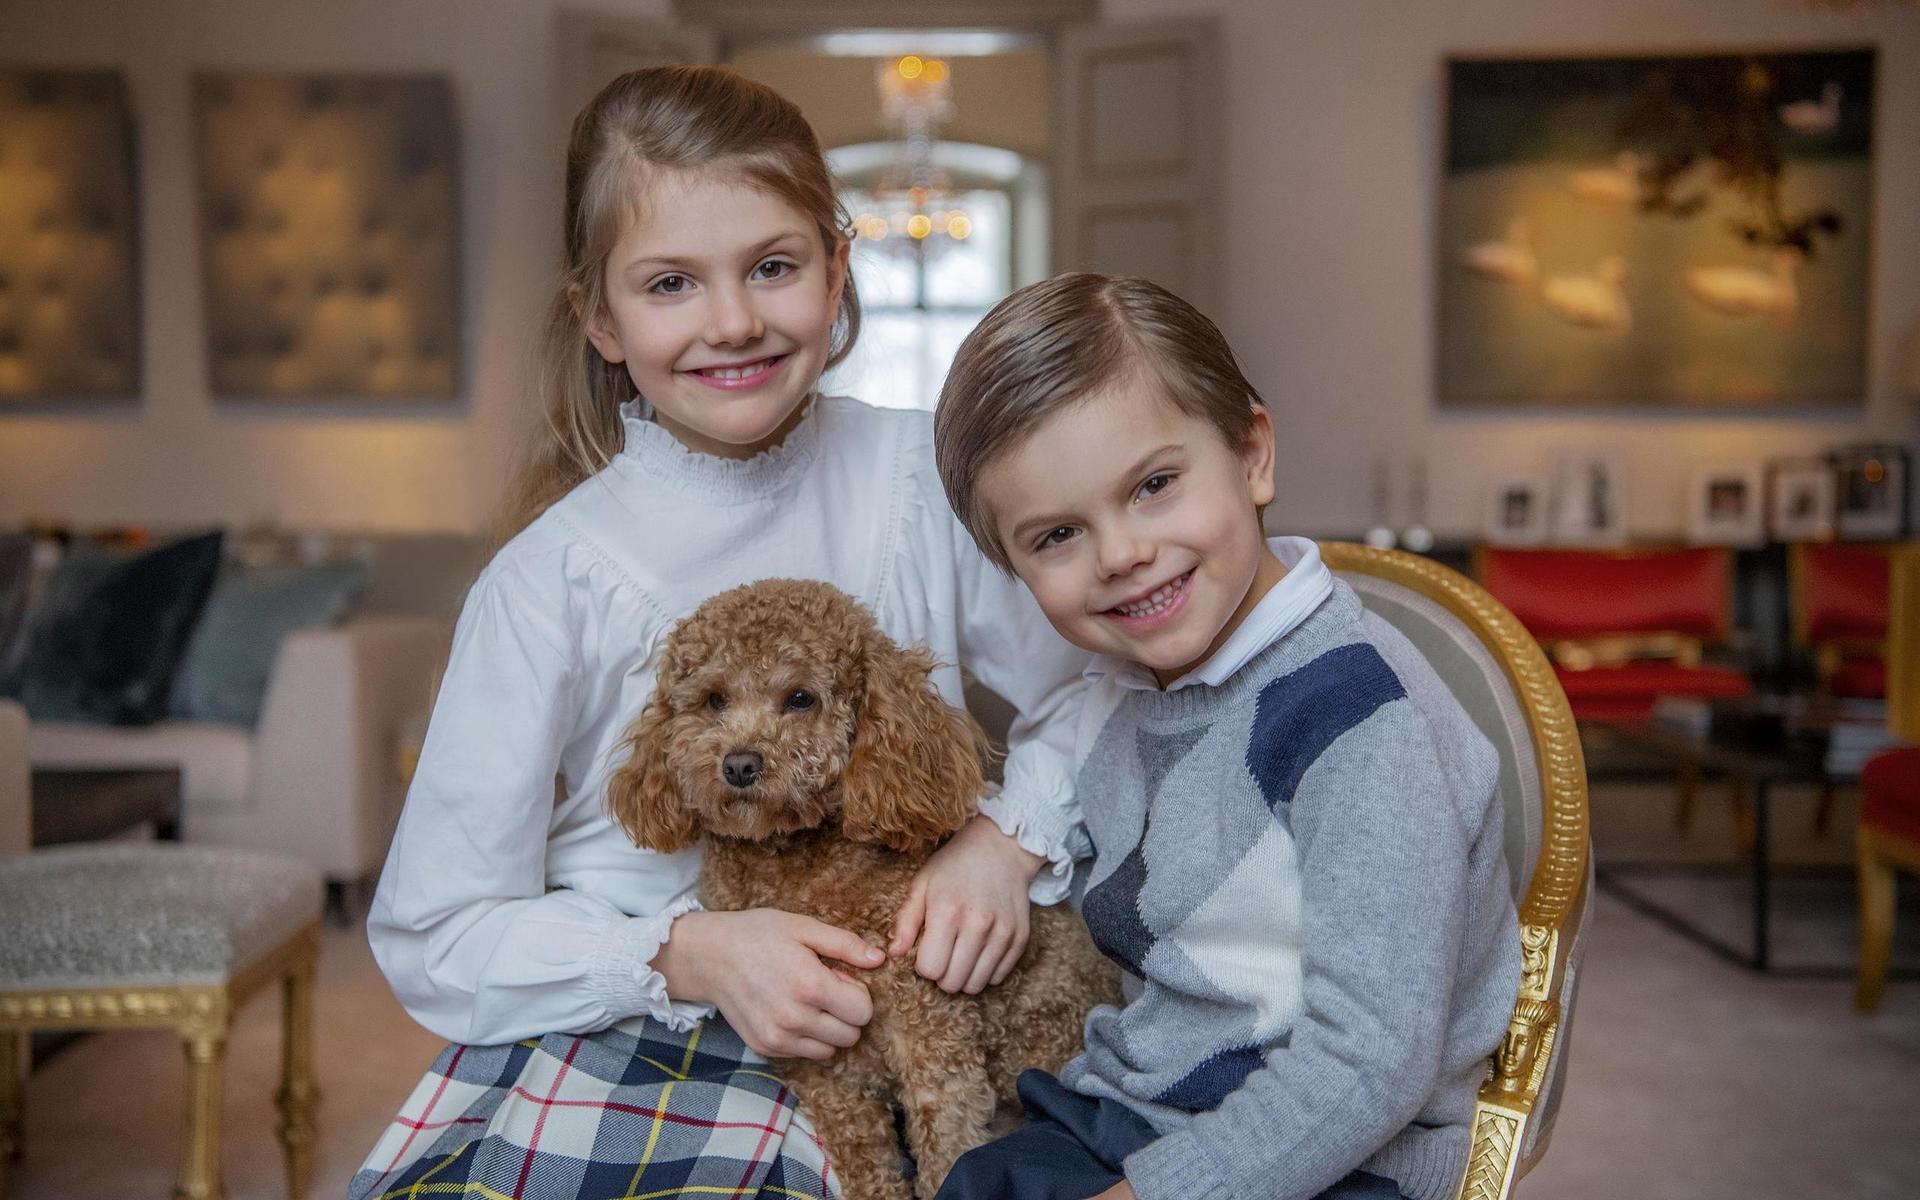 Prinsessan Estelle firar att hon fyller nio år! Vad passar bättre än att ta en bild med lillebror Oscar samt hunden Rio? Följ bildspelet för att få se prinsessan genom åren.